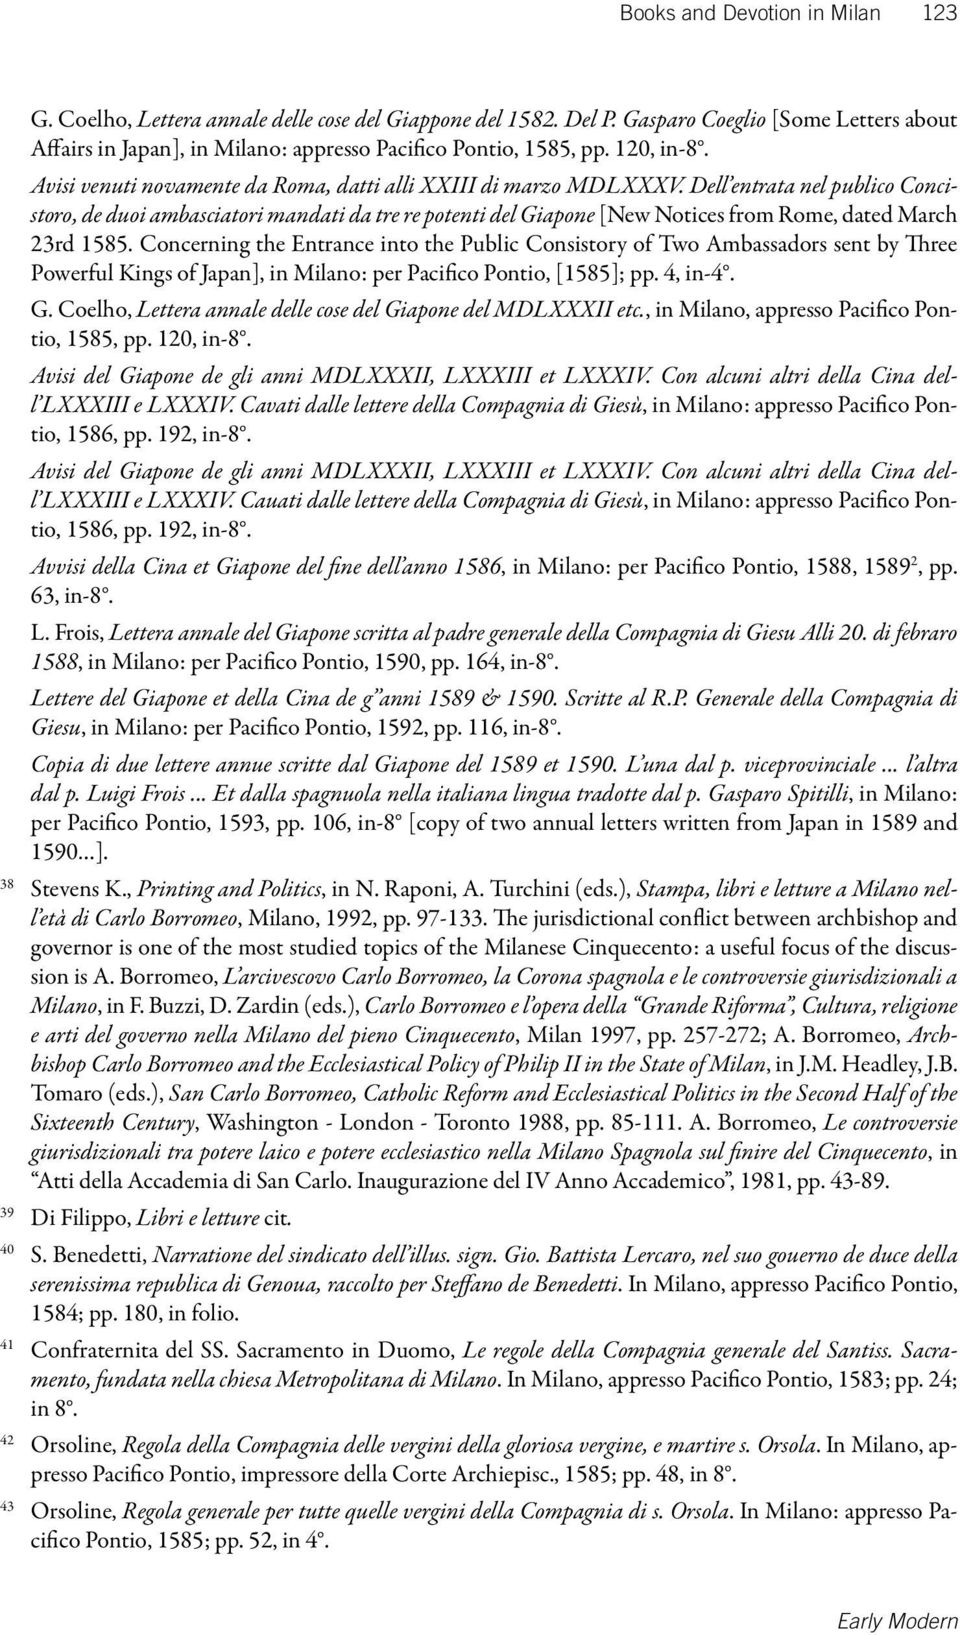 Dell entrata nel publico Concistoro, de duoi ambasciatori mandati da tre re potenti del Giapone [New Notices from Rome, dated March 23rd 1585.